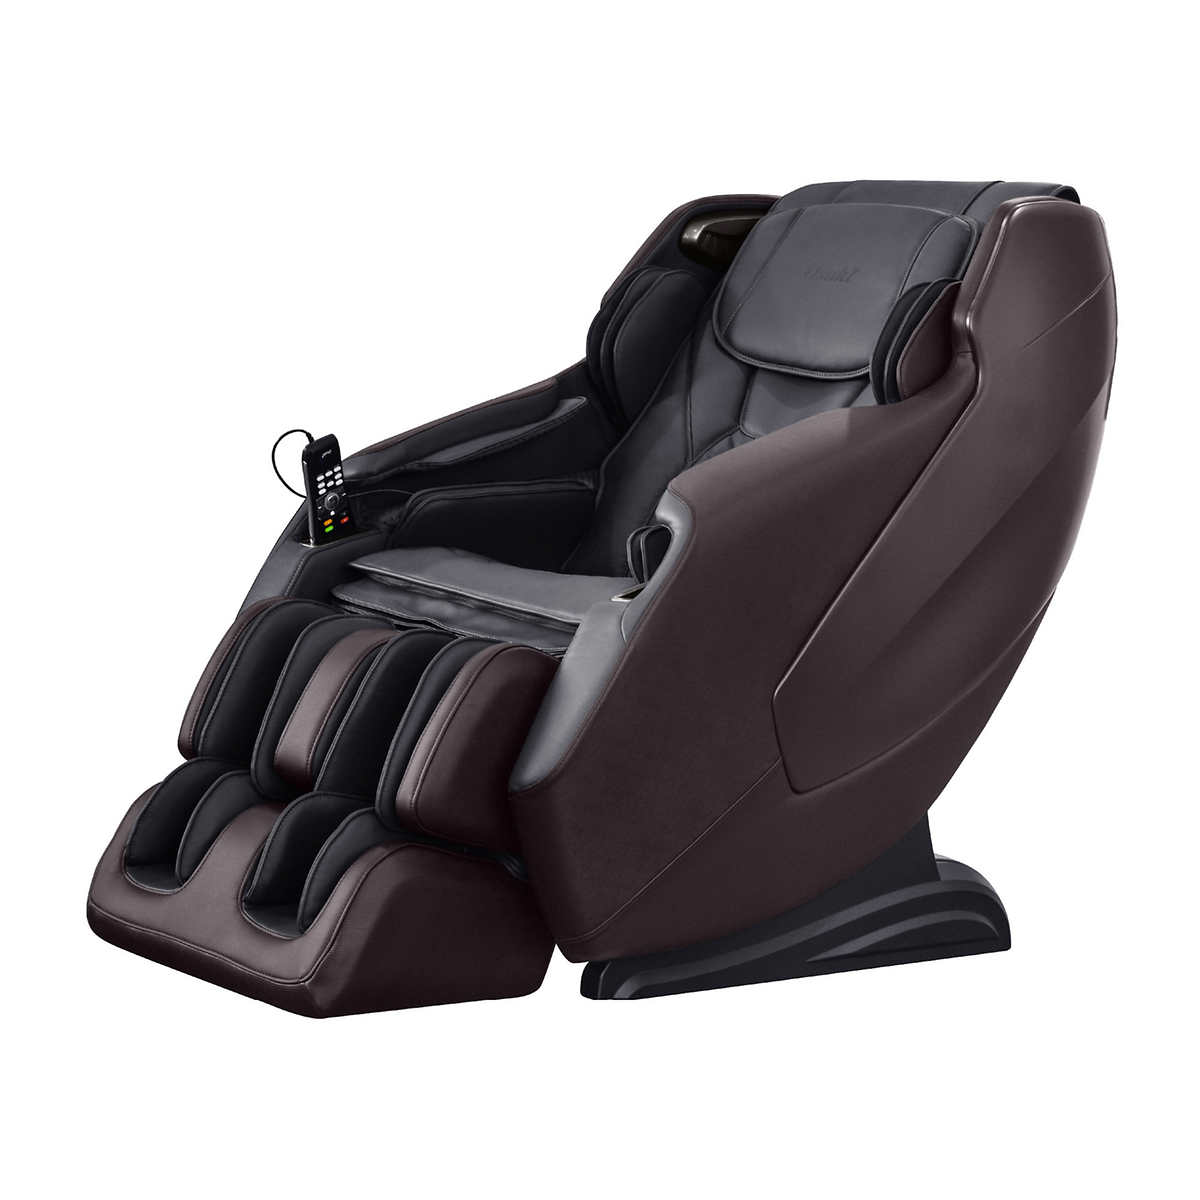 Osaki Maxim 3d Le Massage Chair Costco